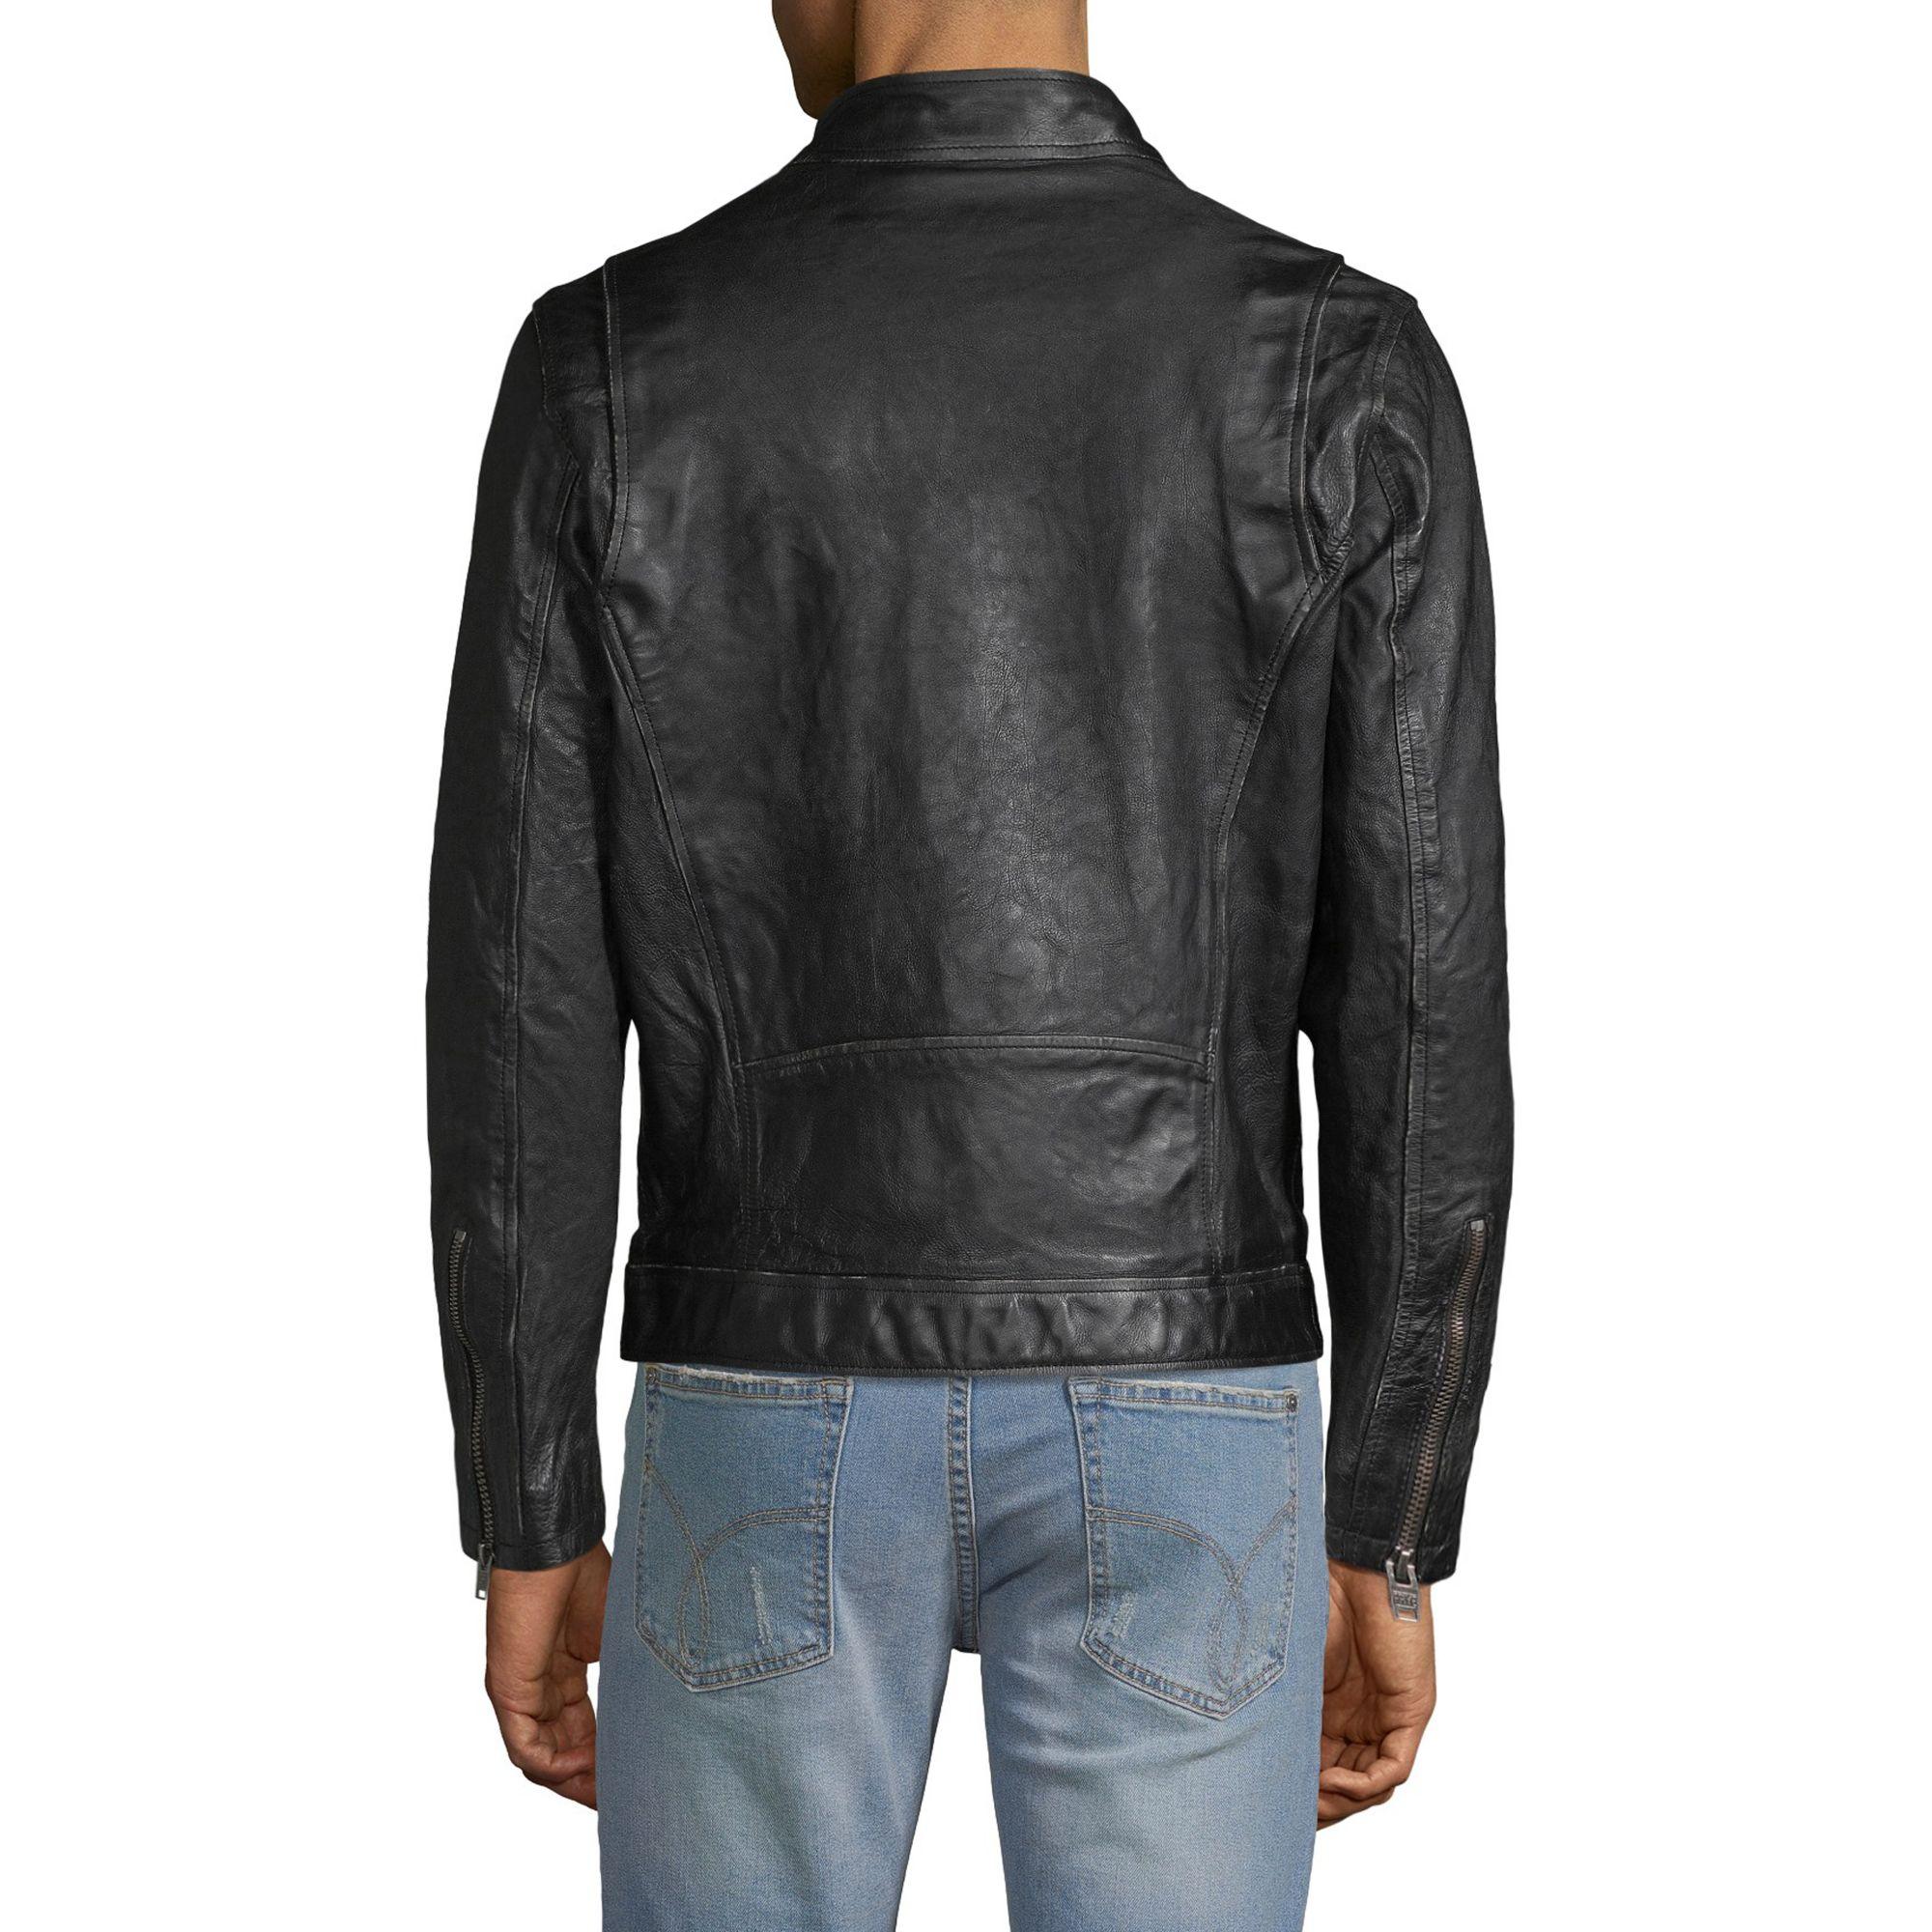 Frye Textured Leather Jacket in Vintage Black (Black) for Men - Lyst